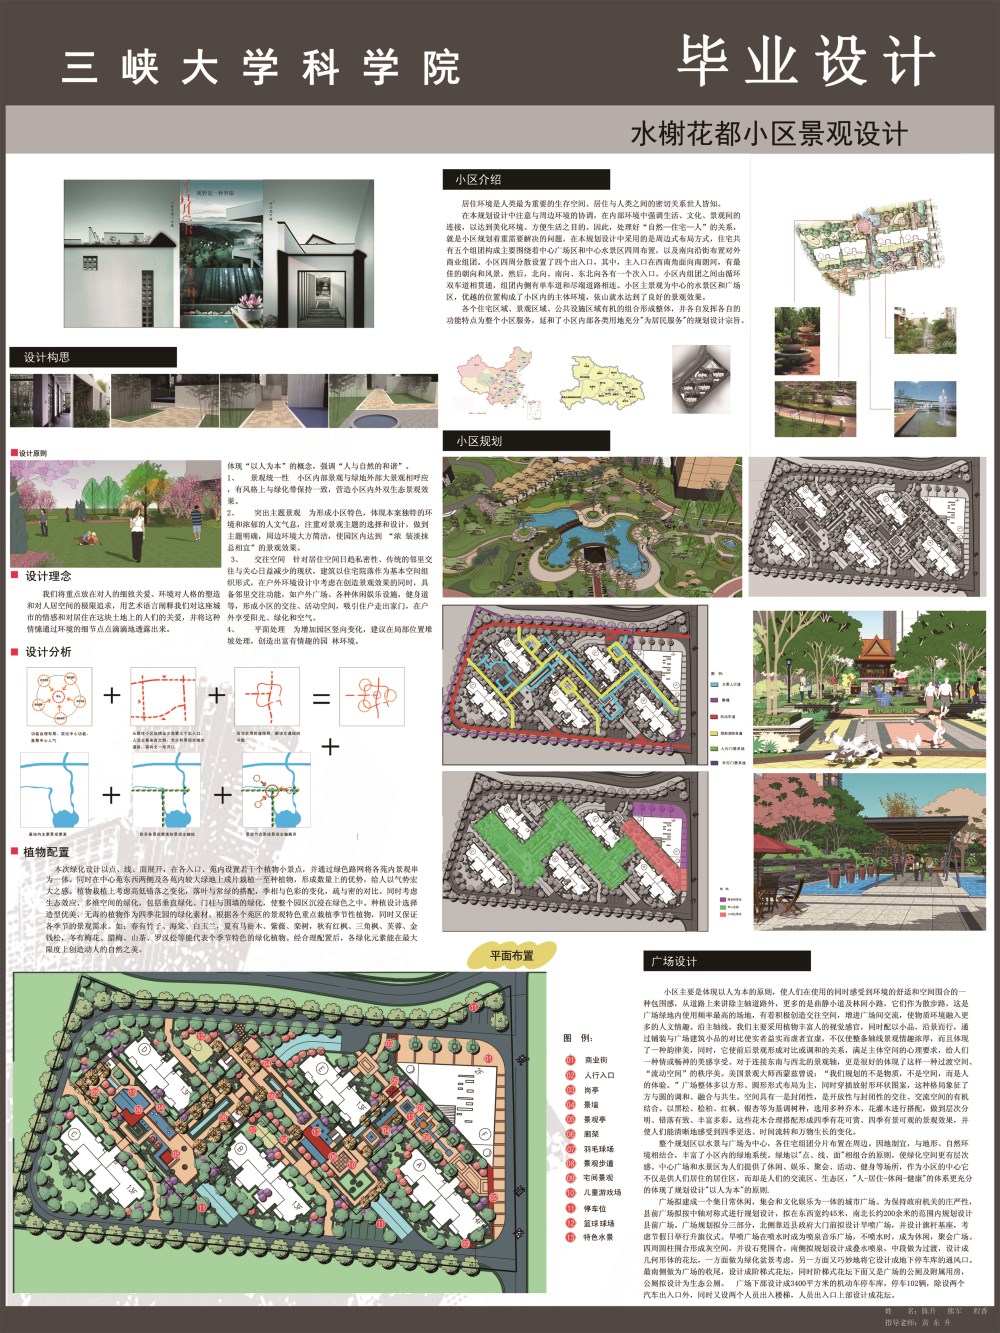 三峡地区人居住宅小区景观设计研究-2